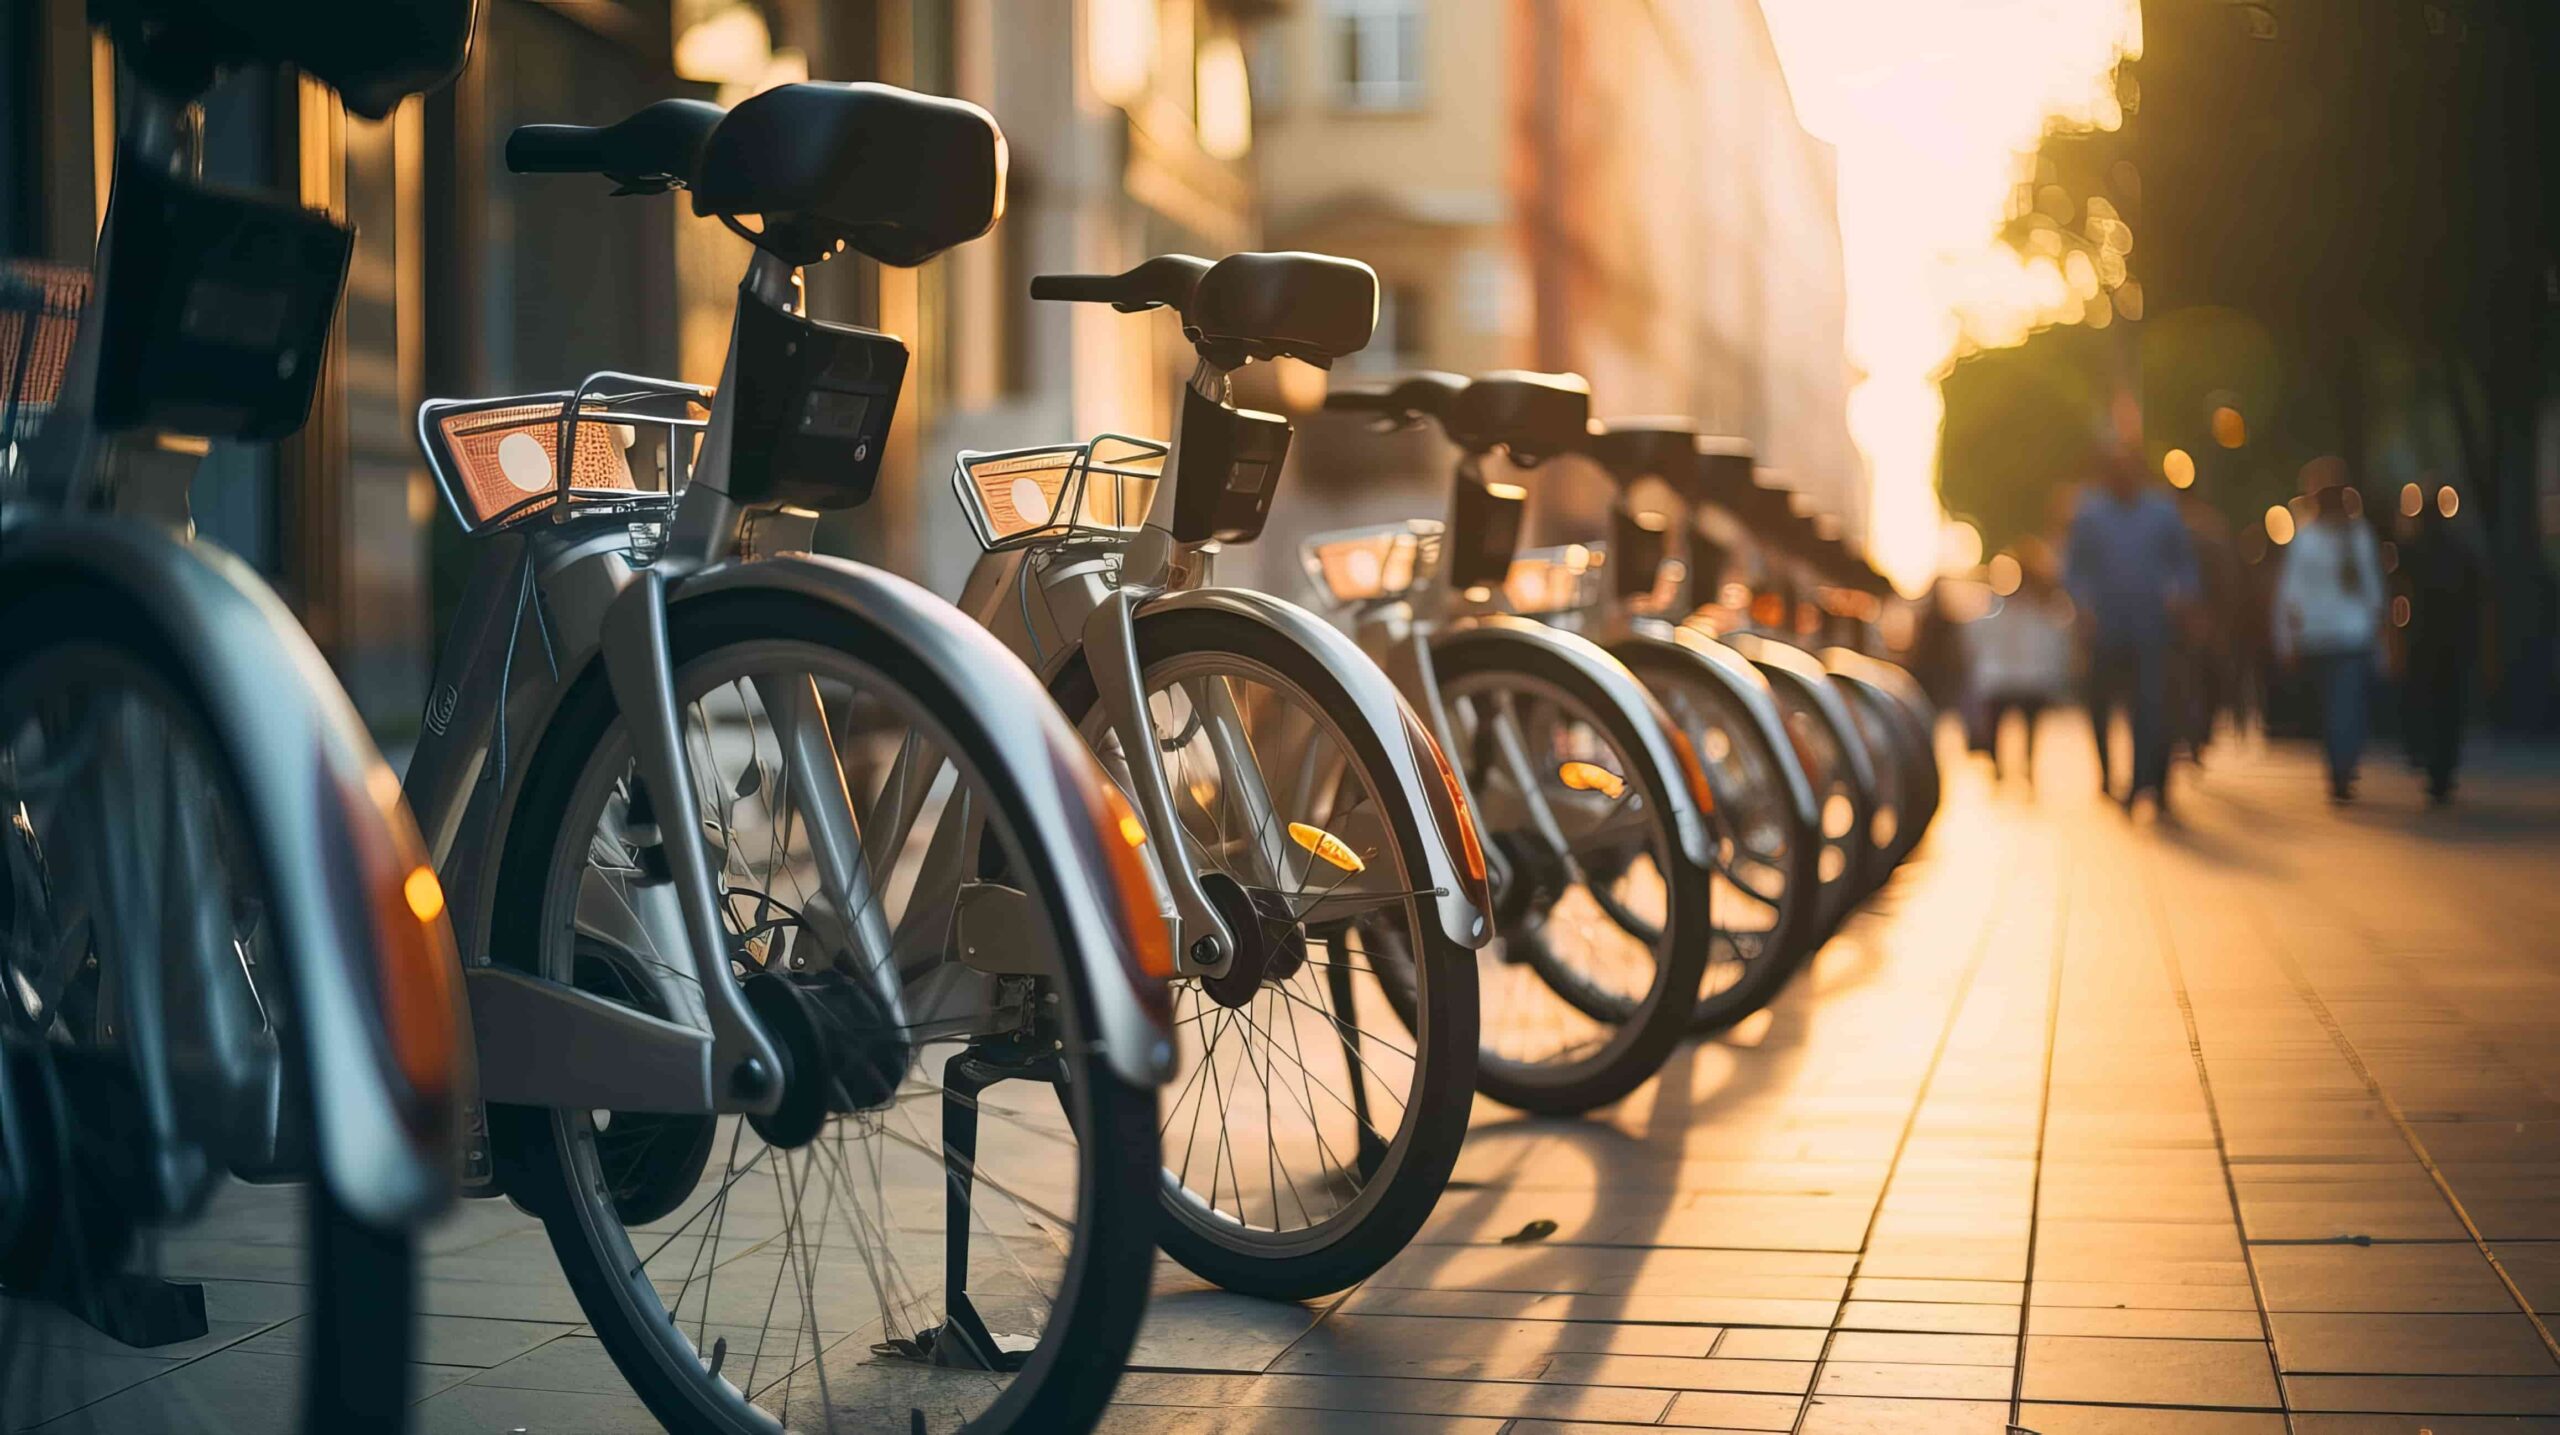 Réseaux de location et partage de vélos électriques en milieu urbain